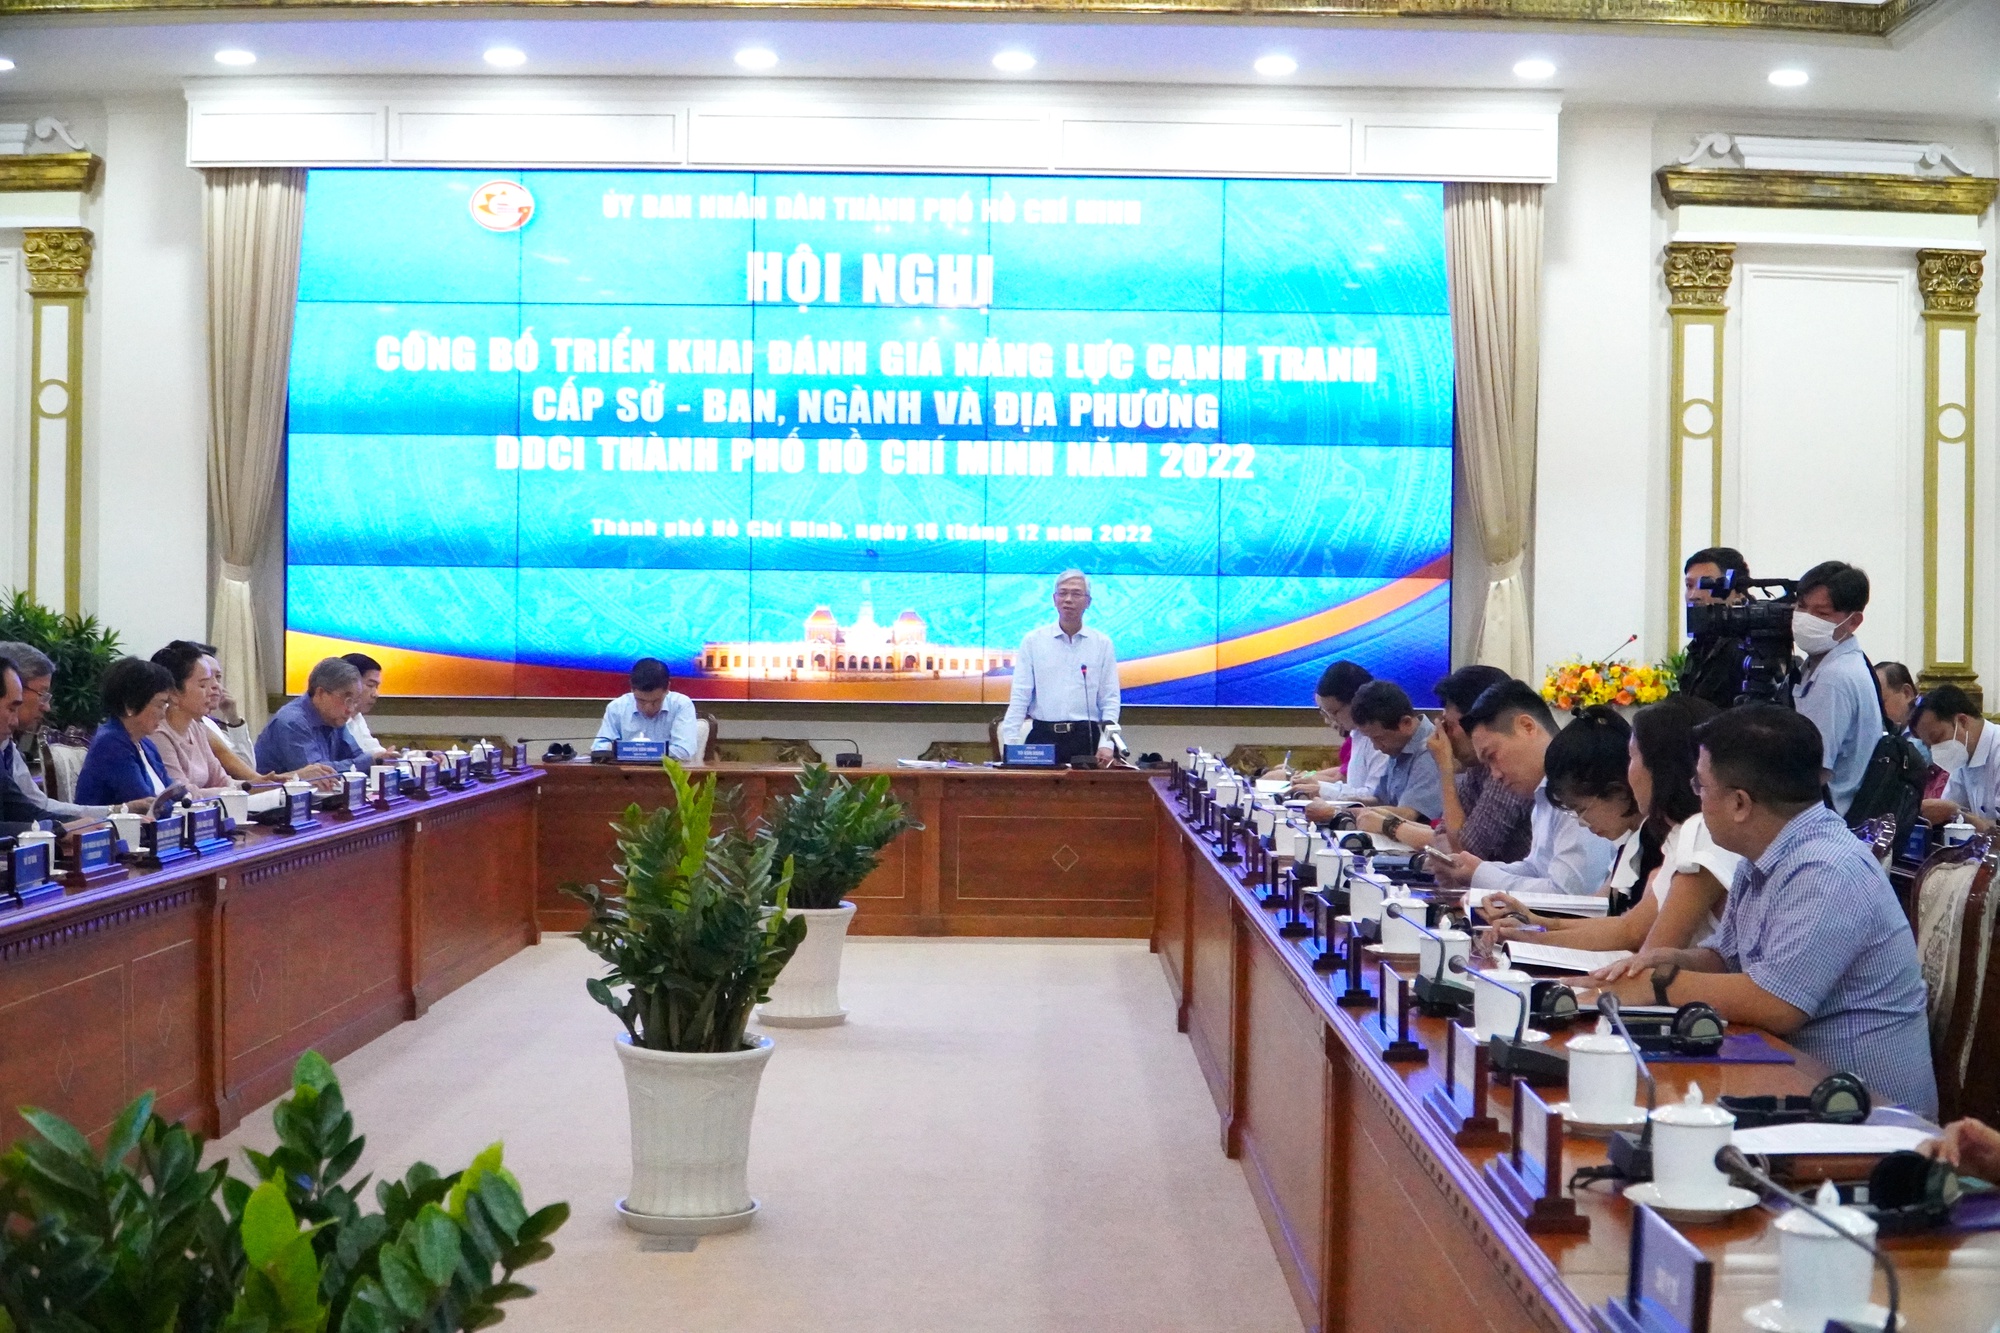 Hãy xem hình ảnh liên quan đến DDCI năm 2022 để tìm hiểu thêm về sự phát triển bền vững của Việt Nam. DDCI năm 2022 là chương trình quan trọng nhằm đẩy mạnh kinh tế, tăng cường năng lực cạnh tranh và thúc đẩy sự phát triển bền vững.